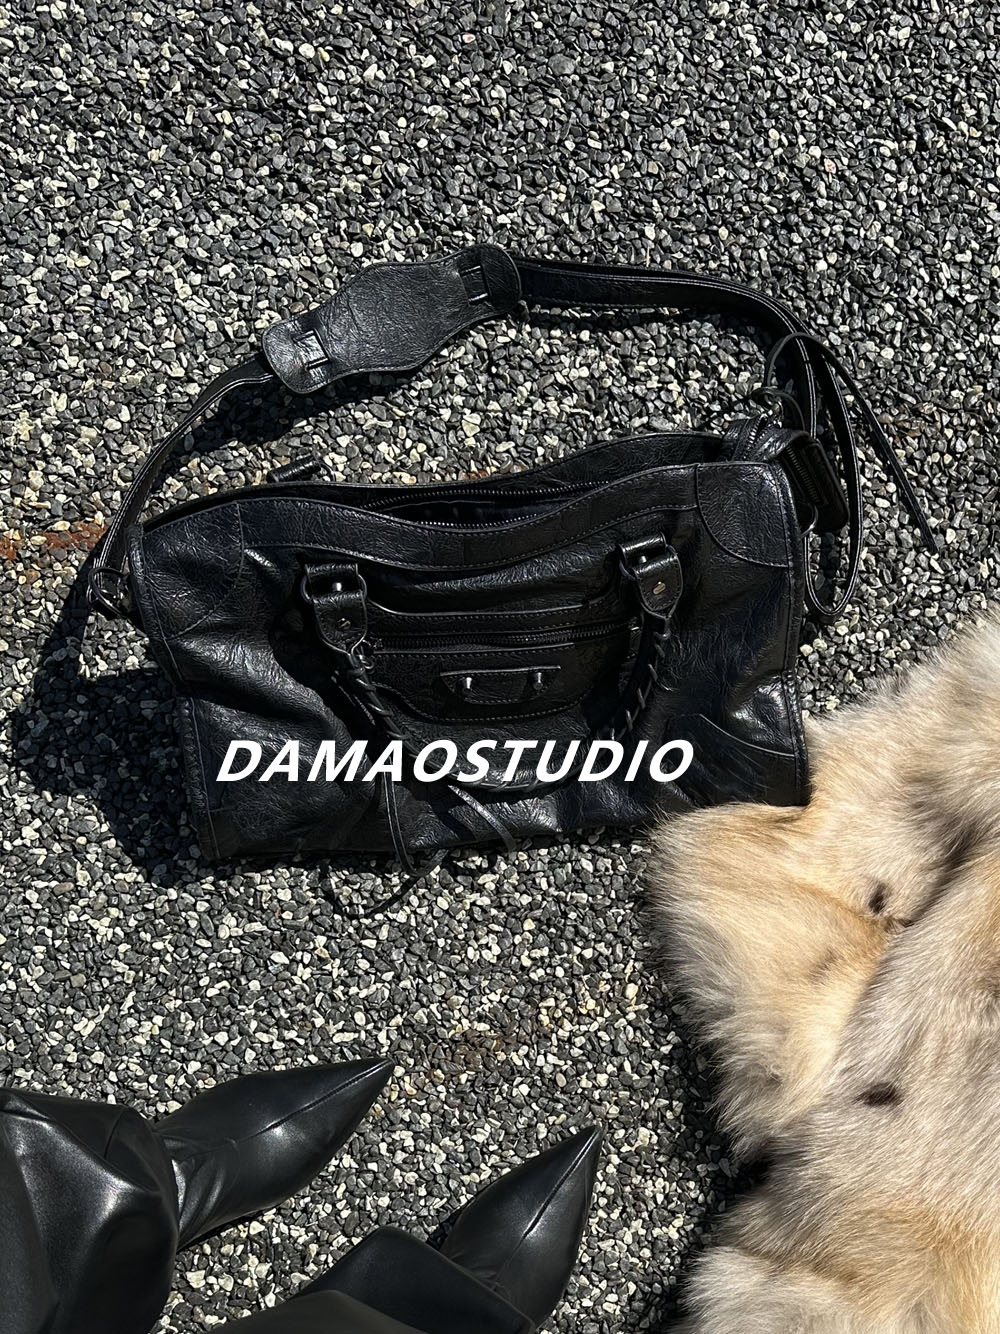 Damao studio卖卖辣妹新潮牛皮铆钉流苏mini机车皮包单肩斜挎手提